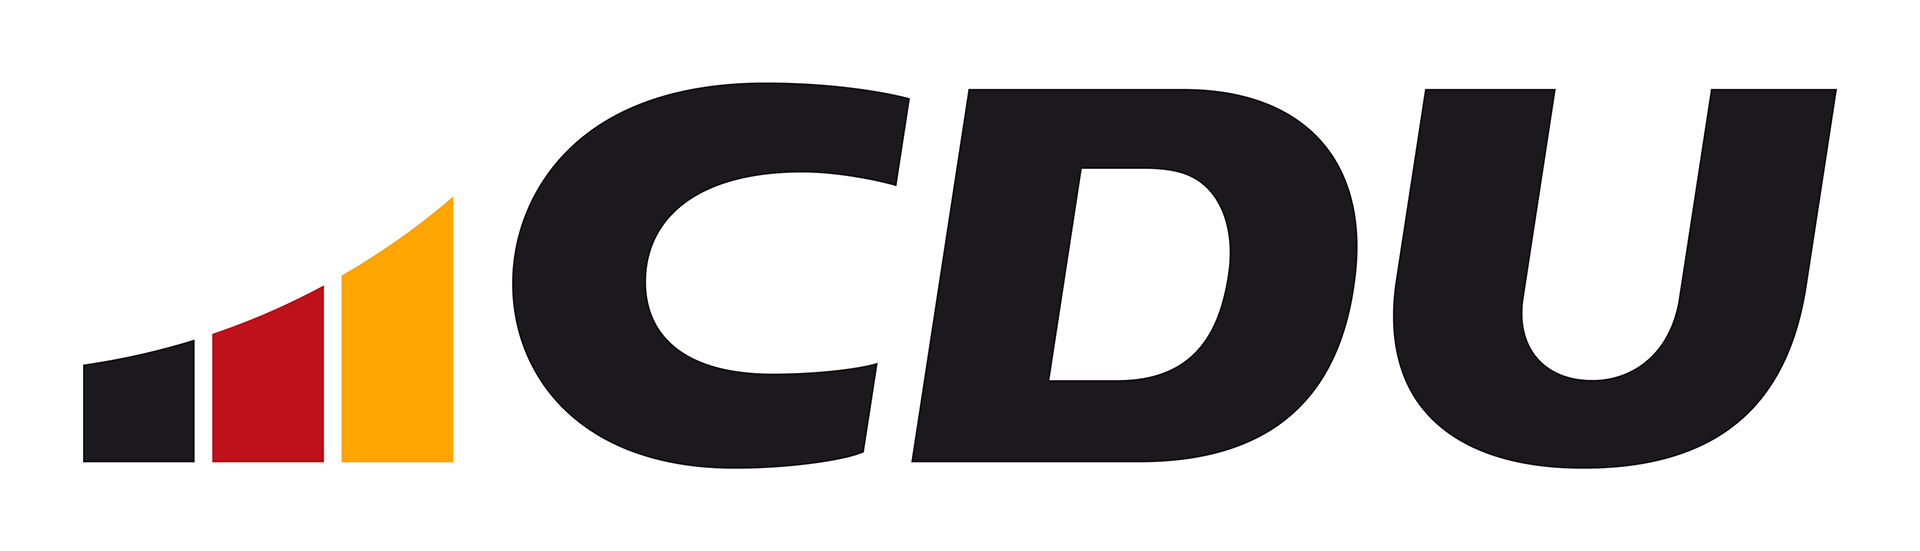 CDU-Logo_ci_227873_RGB_web